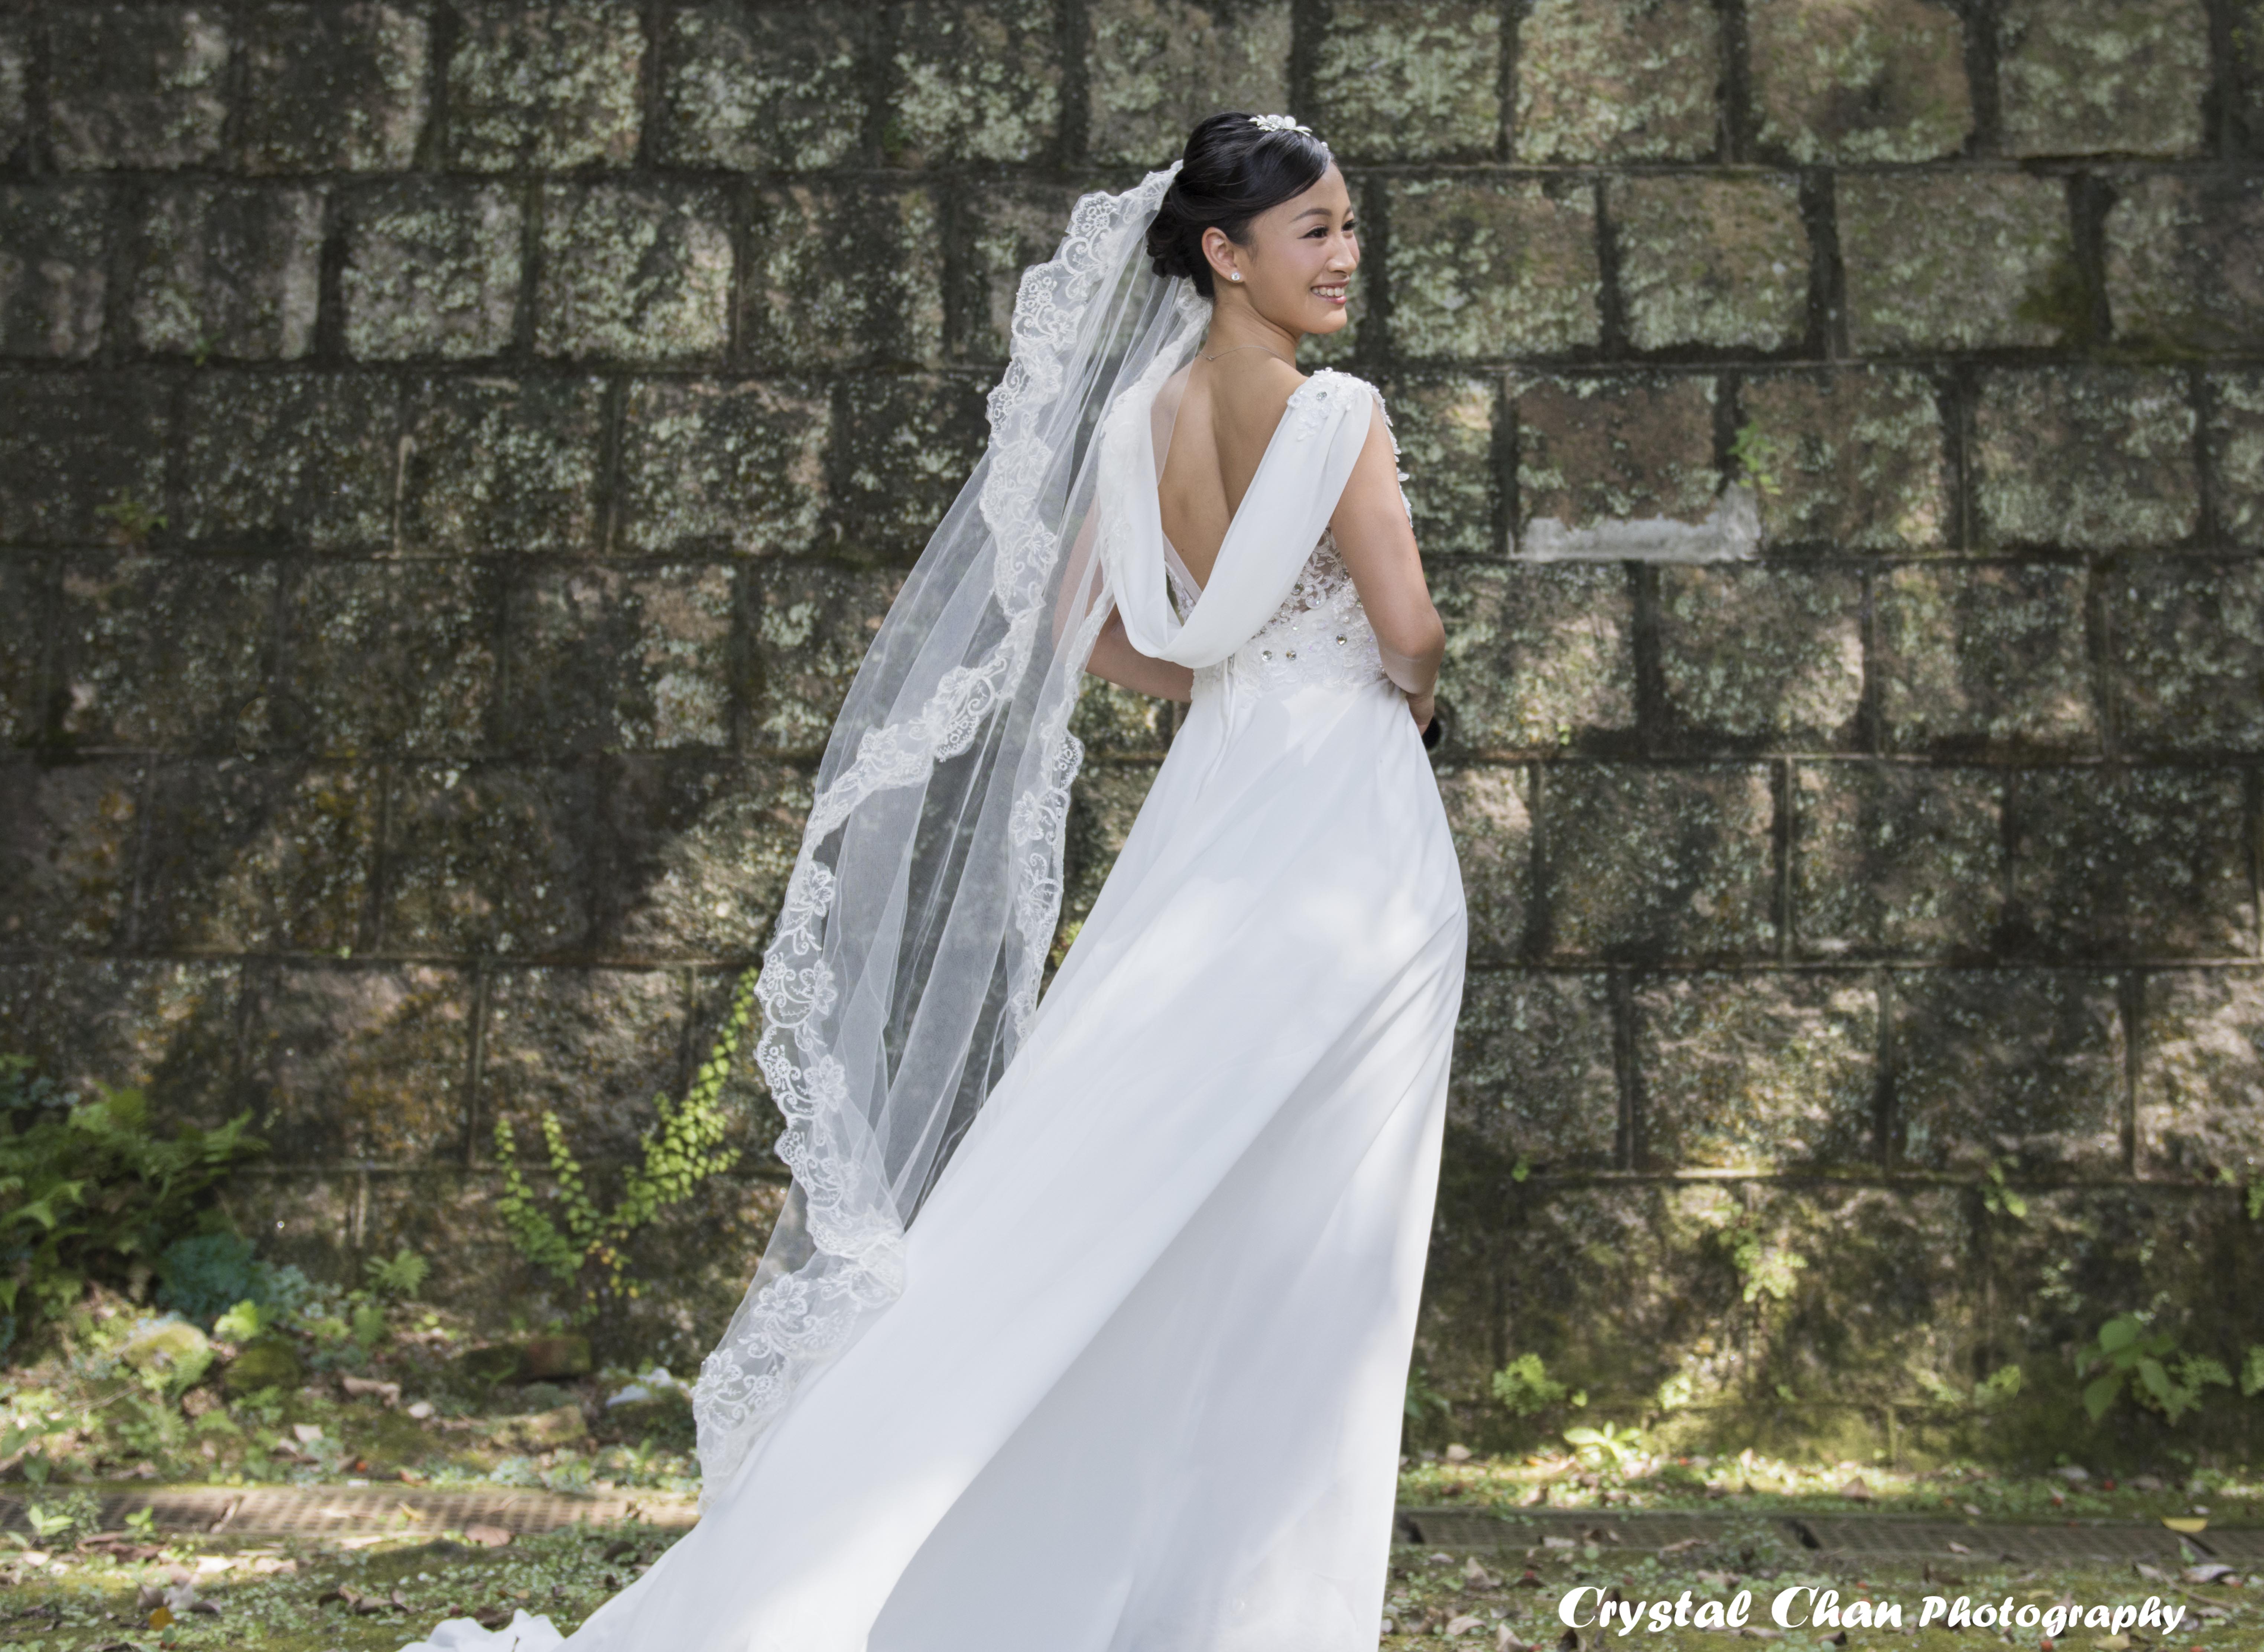 Crystal Chan攝影師工作紀錄: 婚紗外景攝影